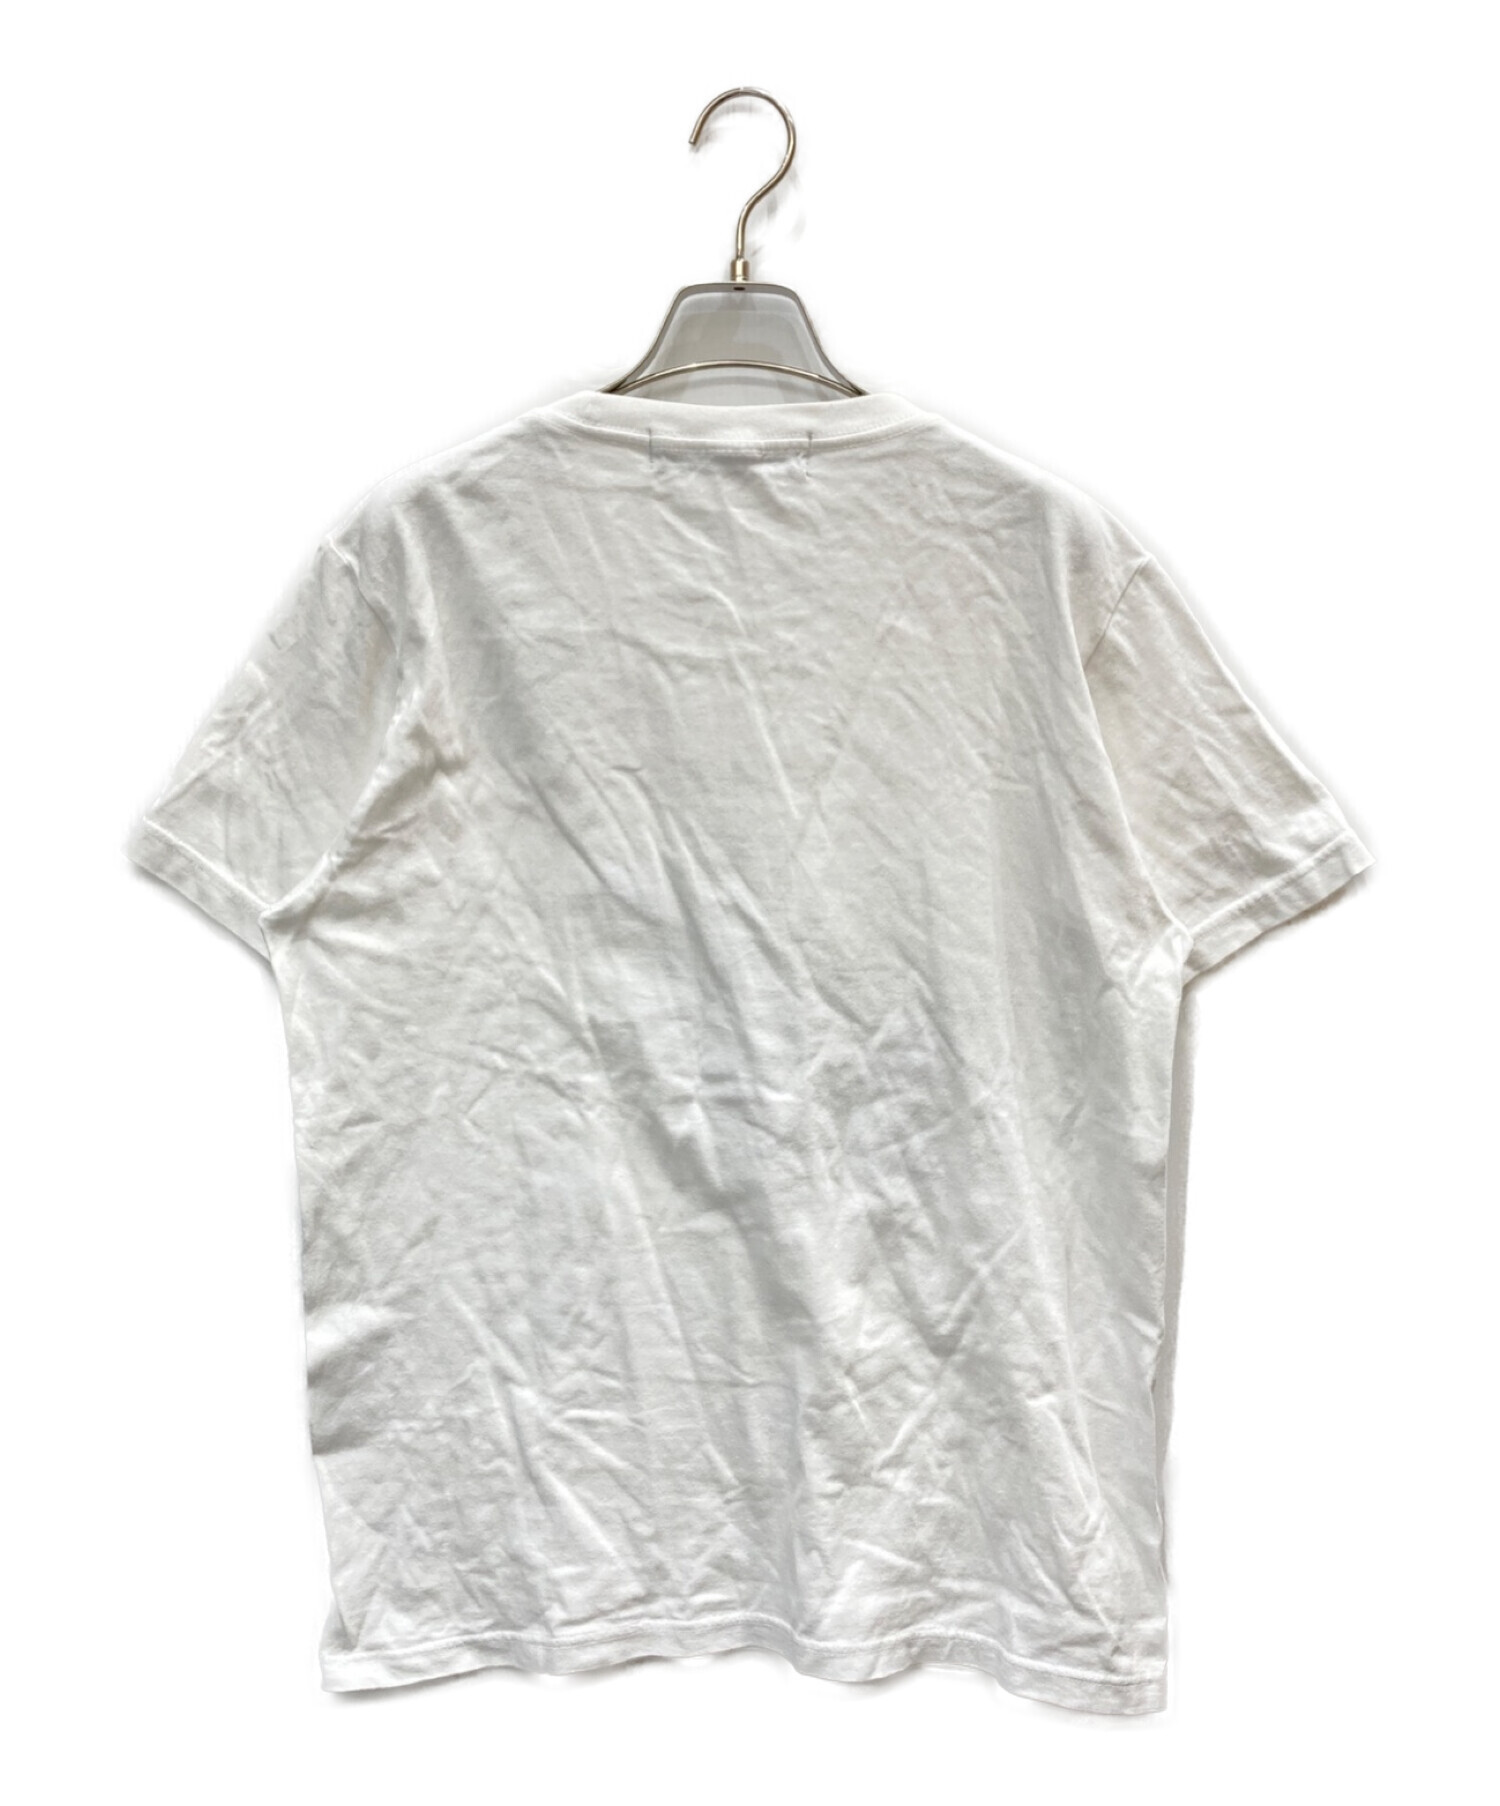 GROUND Y (グラウンドワイ) グラフィックプリントTシャツ グレー サイズ:3